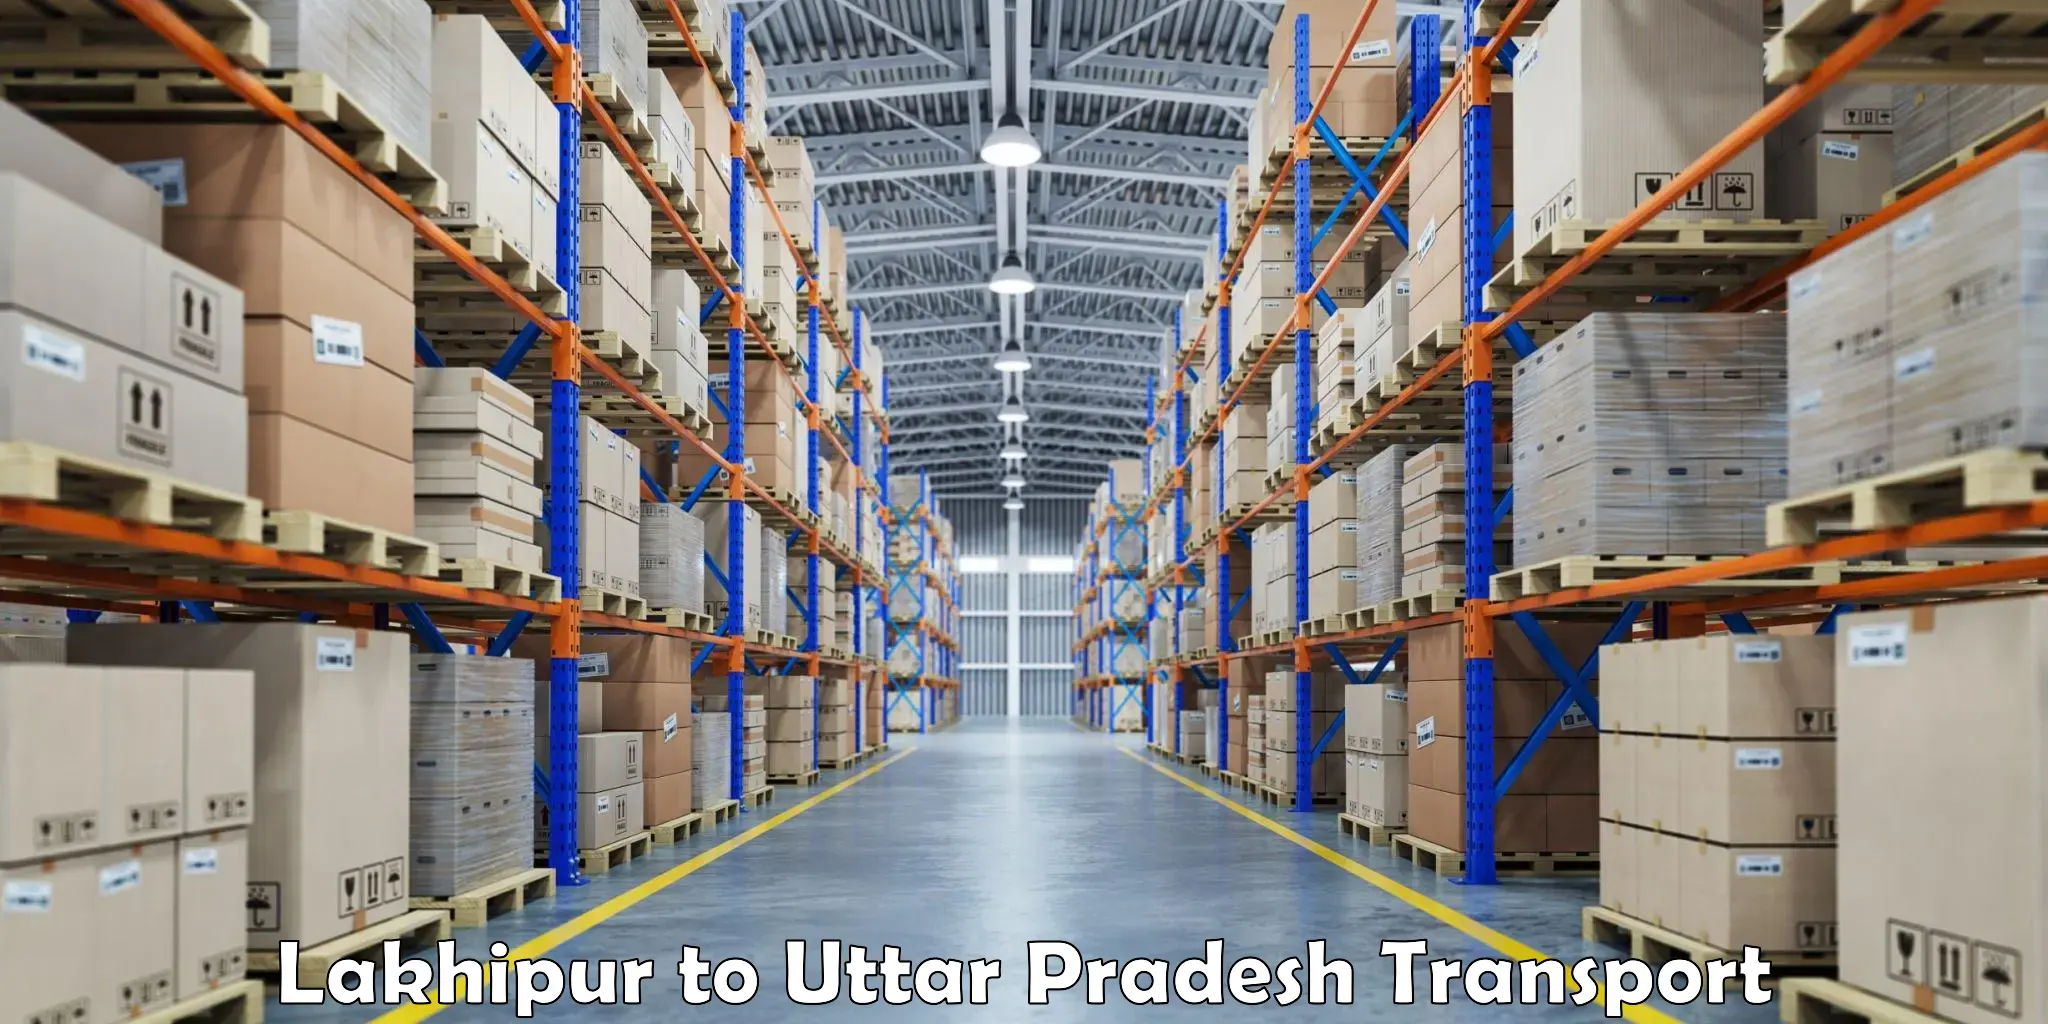 Lorry transport service Lakhipur to Daurala